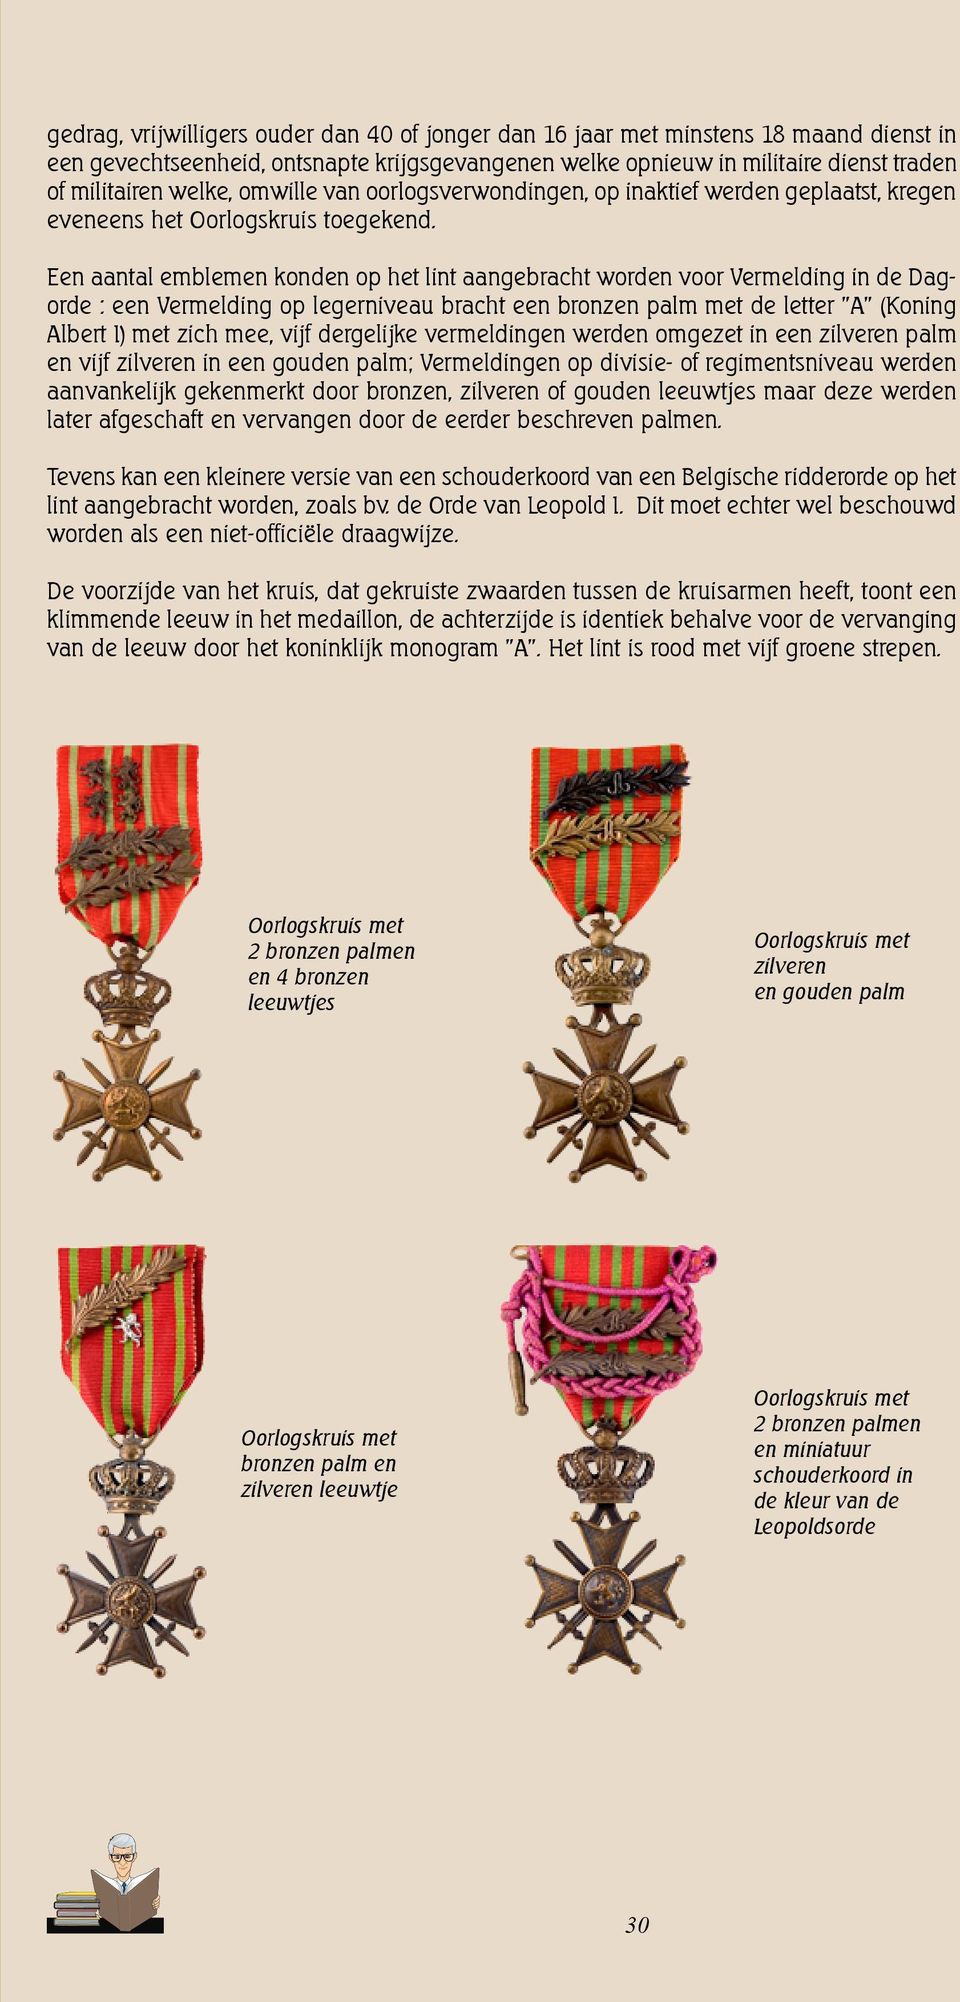 Een aantal emblemen konden op het lint aangebracht worden voor Vermelding in de Dagorde : een Vermelding op legerniveau bracht een bronzen palm met de letter "A" (Koning Albert I) met zich mee, vijf